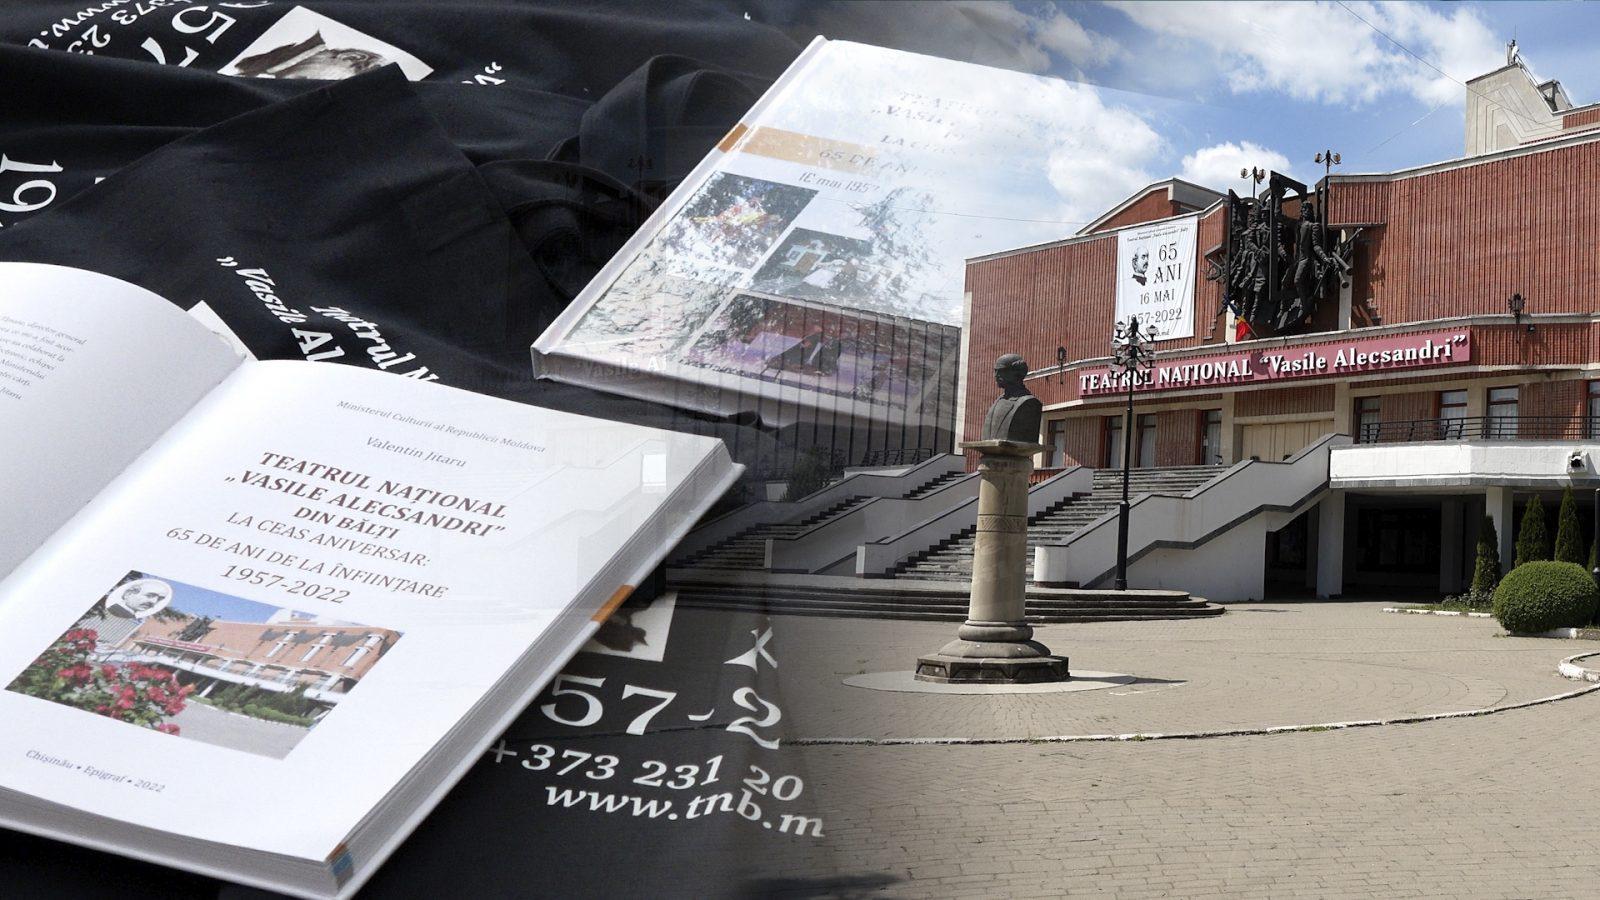 /VIDEO/ La ceas aniversar, teatrul din Bălți a lansat o carte despre activitatea sa